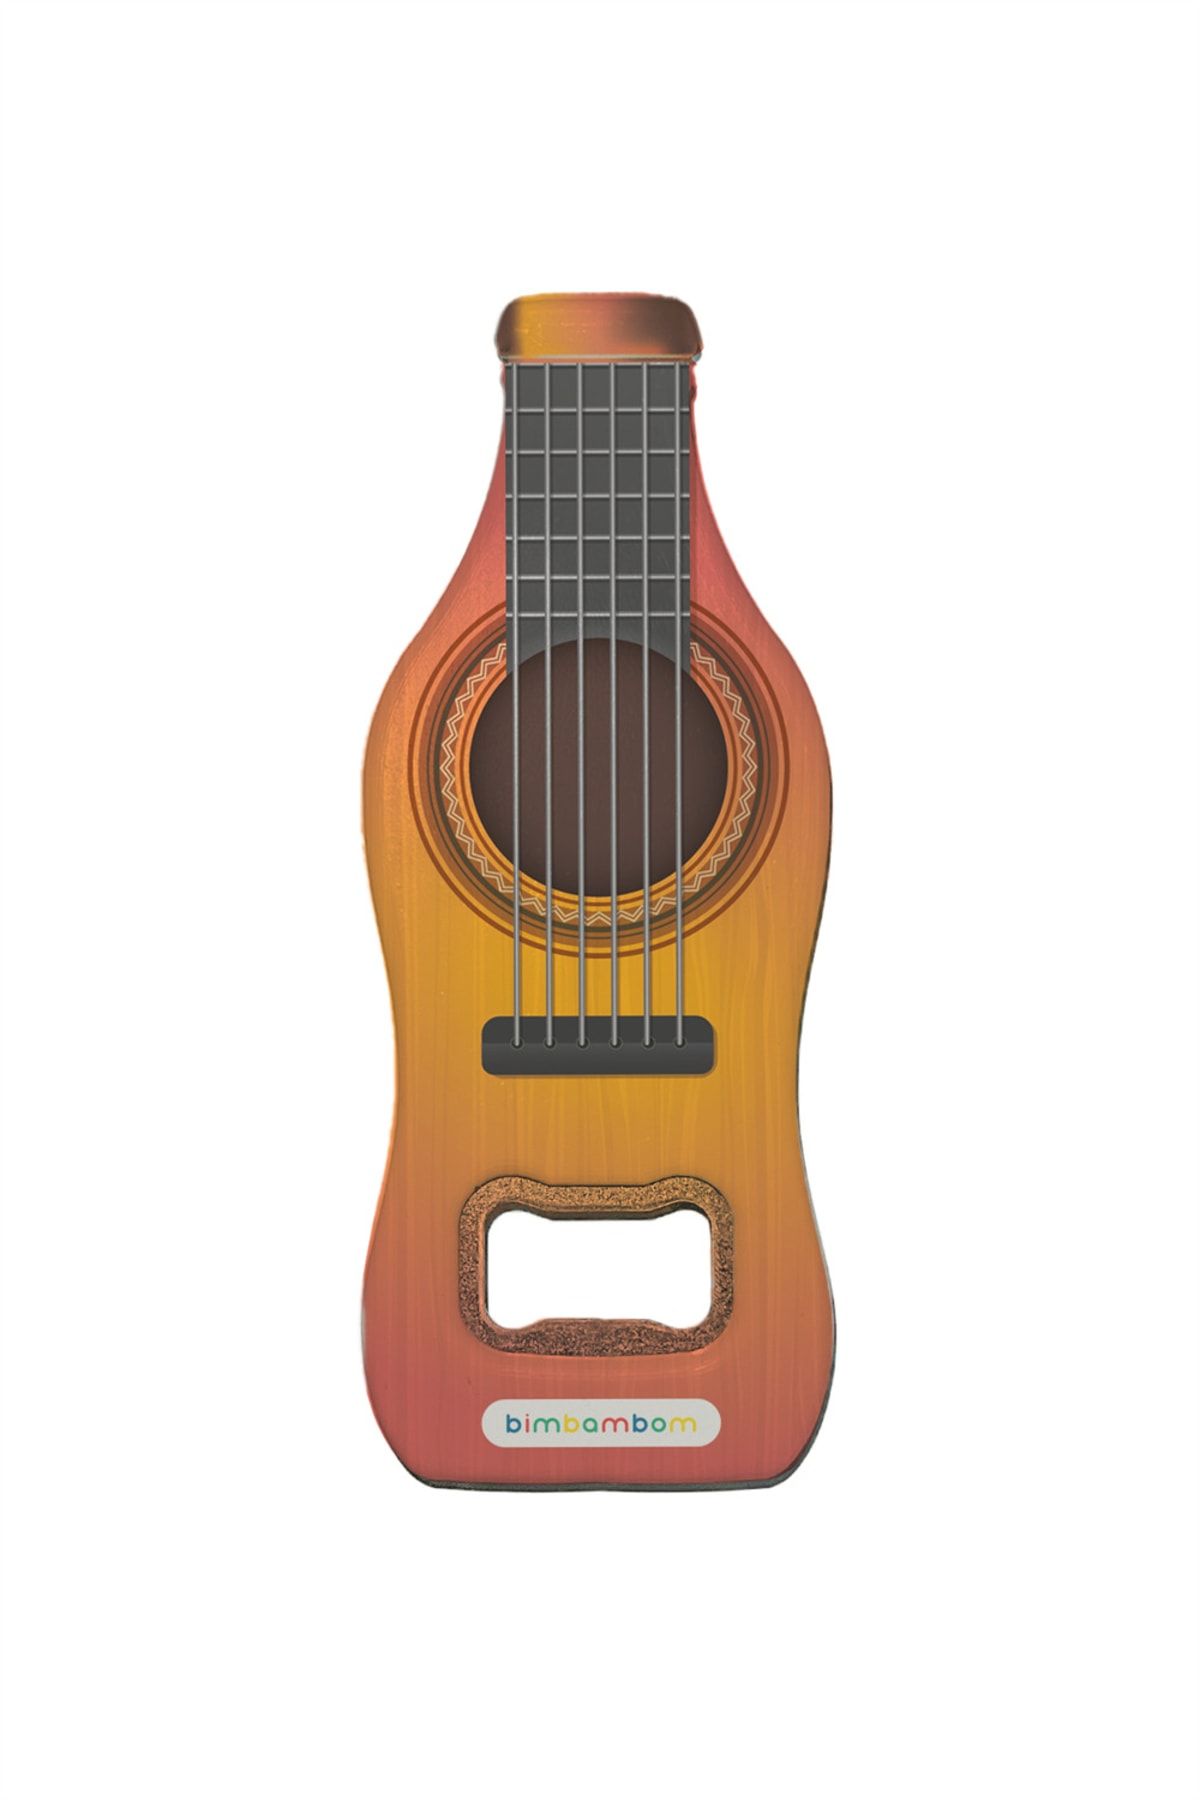 bimbambom Şişe Açacağı, Gitar Temalı Hediyelik Magnet Özellikli Şişe Açacağı